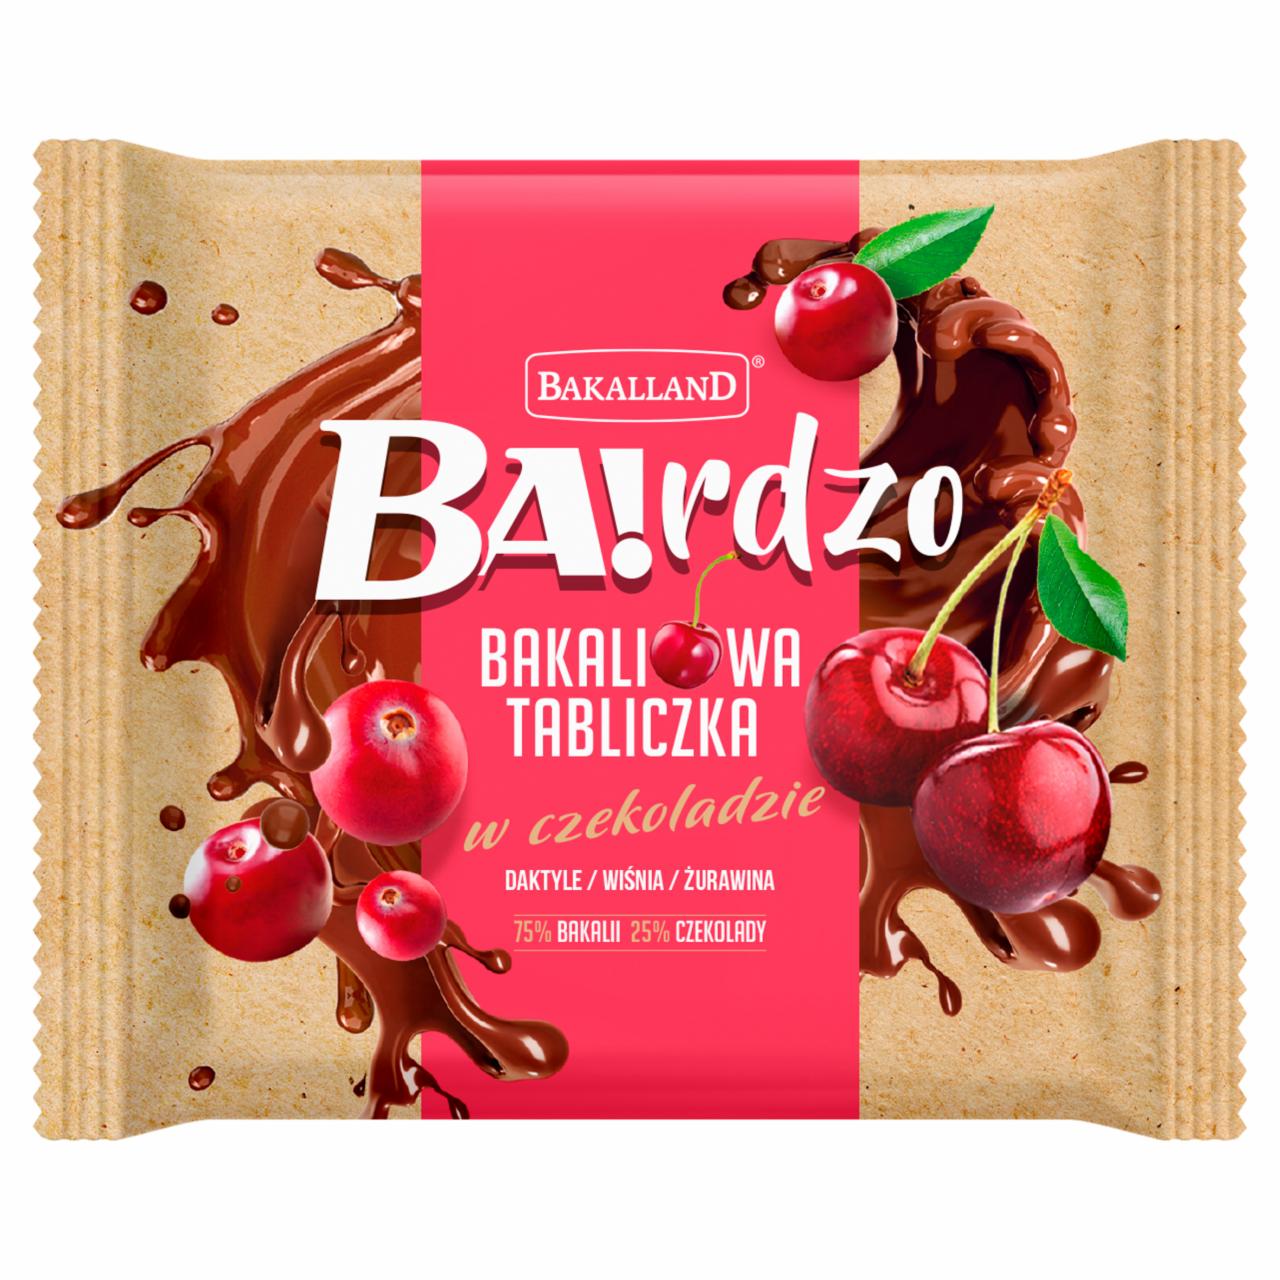 Zdjęcia - Bakalland Ba!rdzo Bakaliowa tabliczka w czekoladzie daktyle wiśnia żurawina 65 g